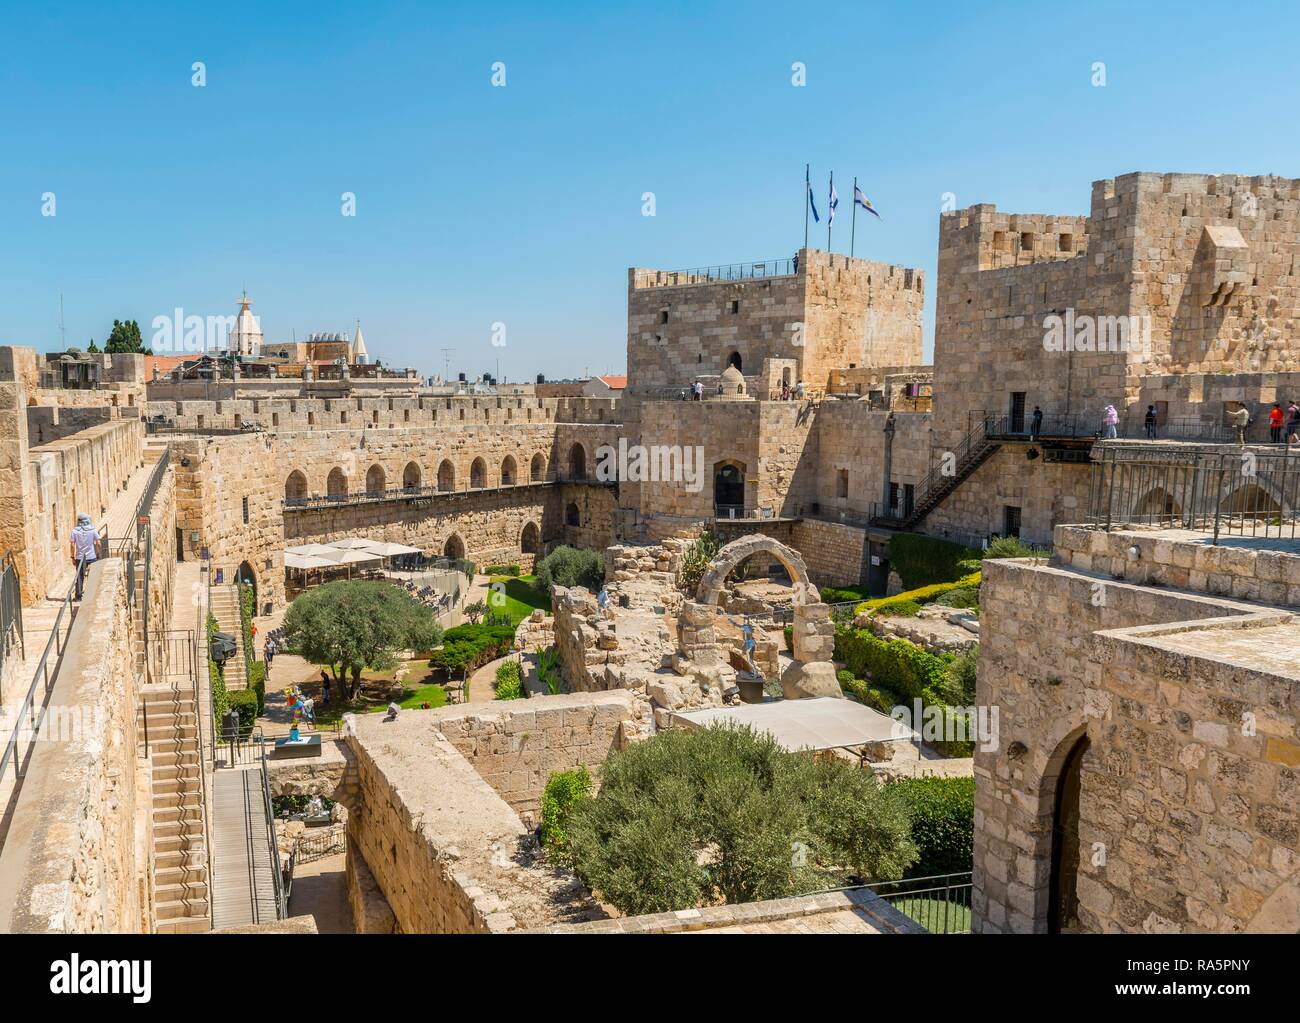 Ruines d'une citadelle, la citadelle de David, Tour de David, l'ancien mur de la ville, Jérusalem, Israël Banque D'Images